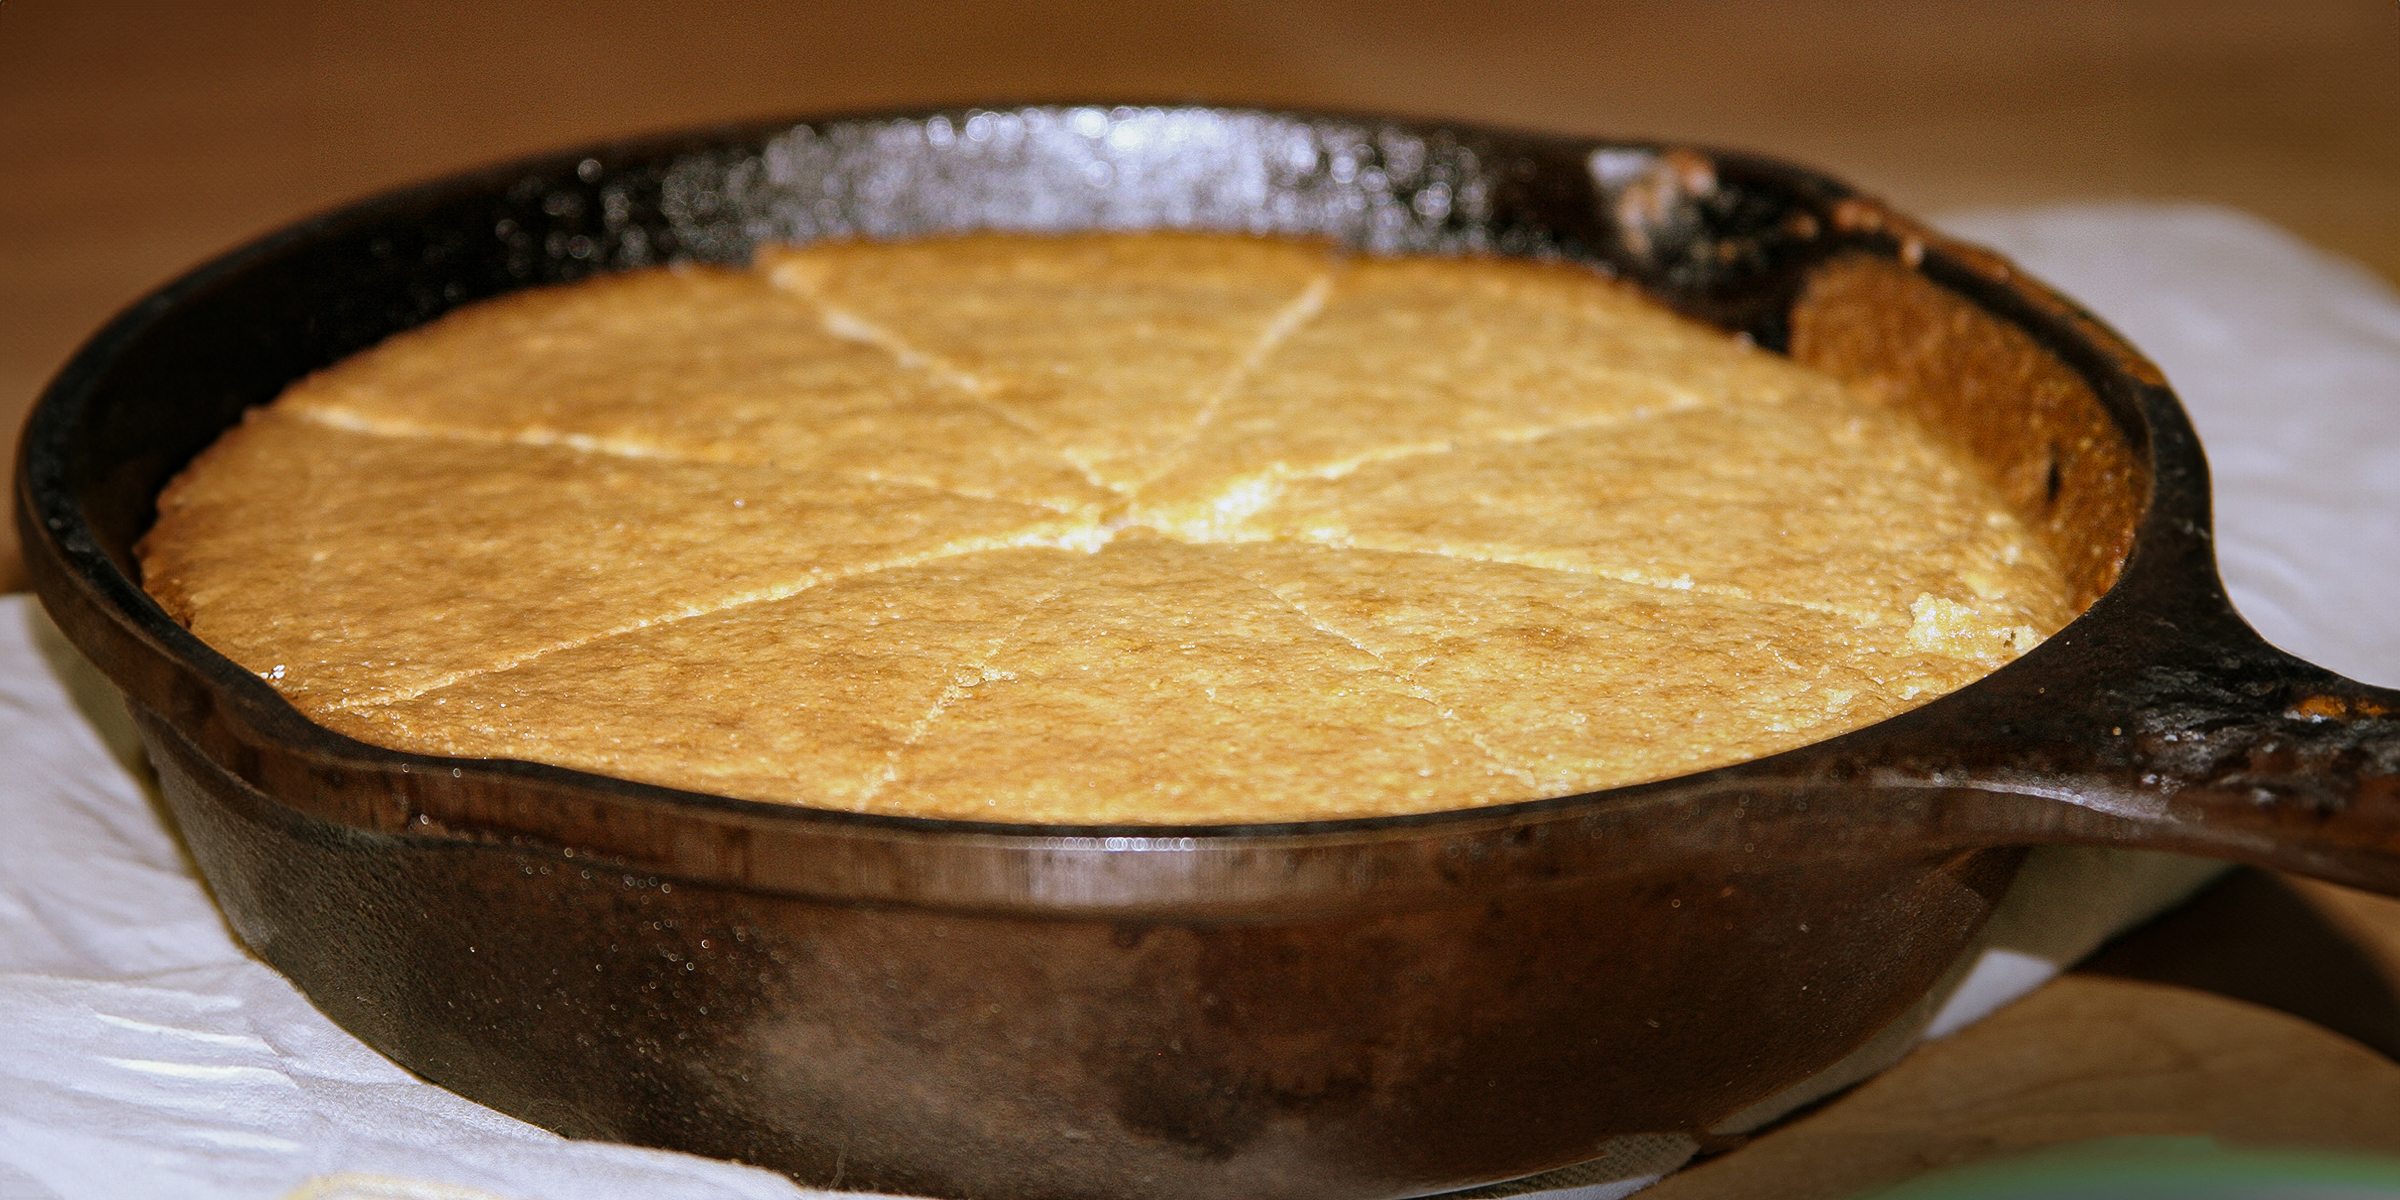 Una sartén con pan de maíz | Fuente: Flickr.com/plasticrevolver (CC BY-SA 2.0)